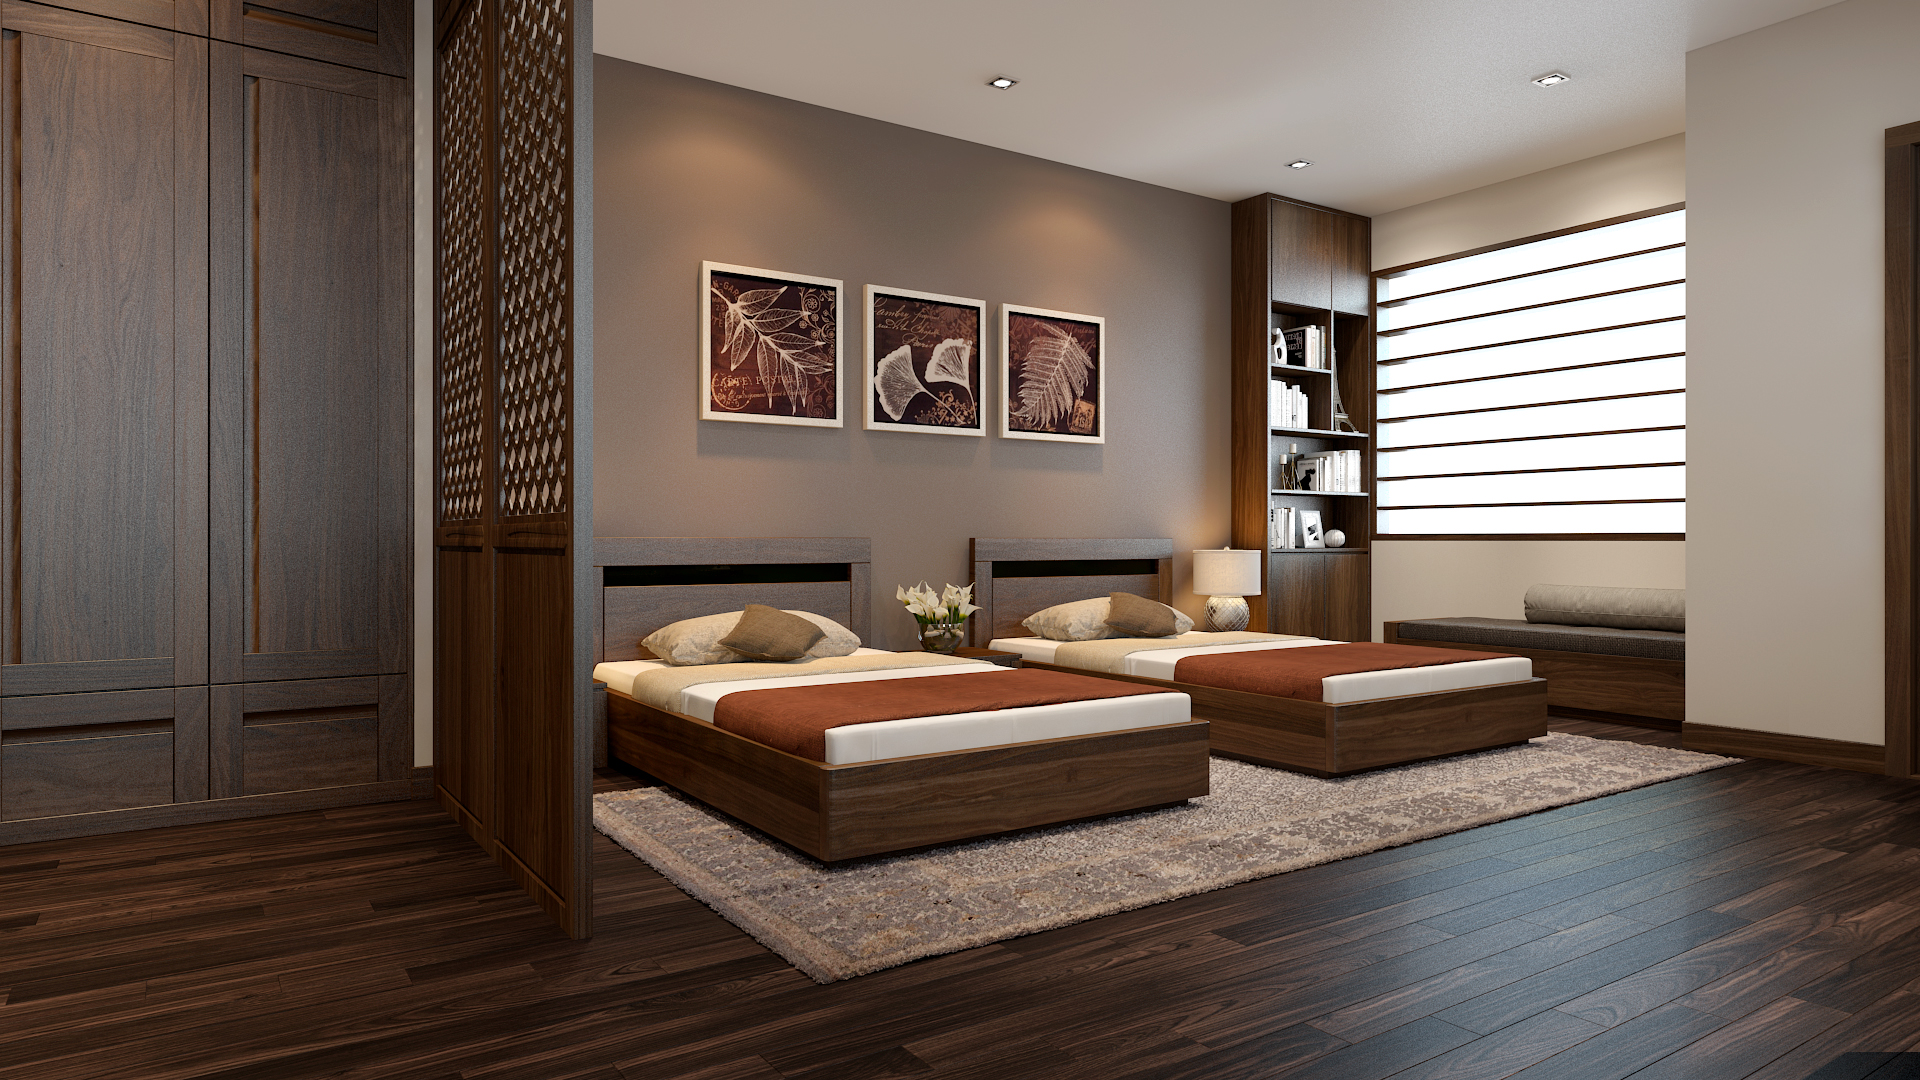 Mẫu thiết kế phòng ngủ 2 giường cho không gian khách sạn